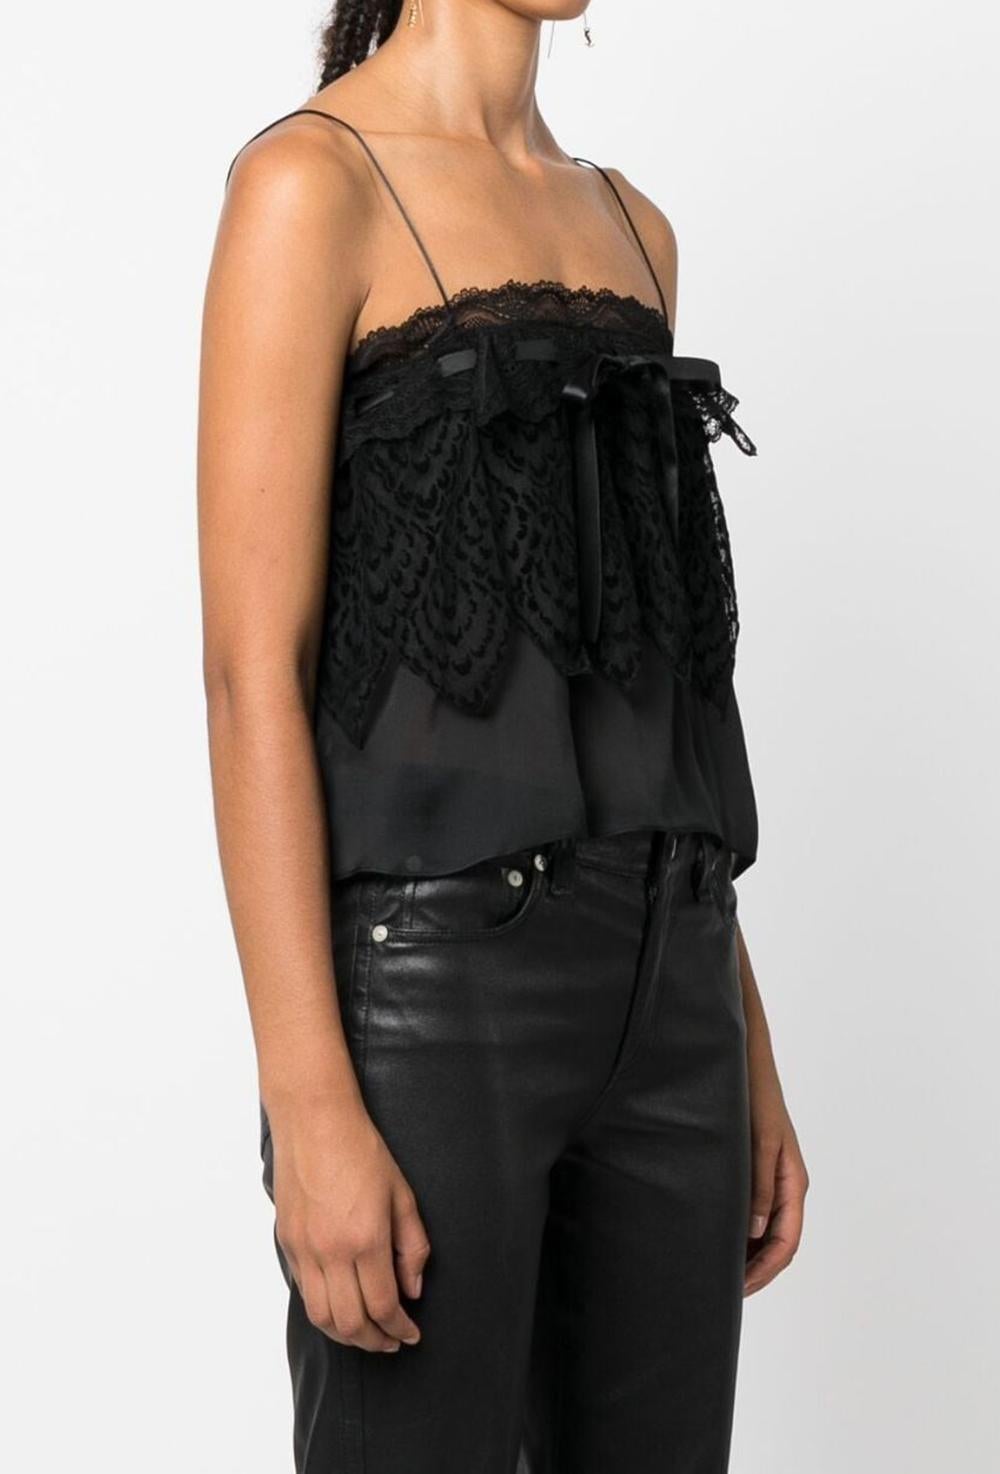 Women's Yves Saint Laurent Evening Black Silk Lace Top For Sale